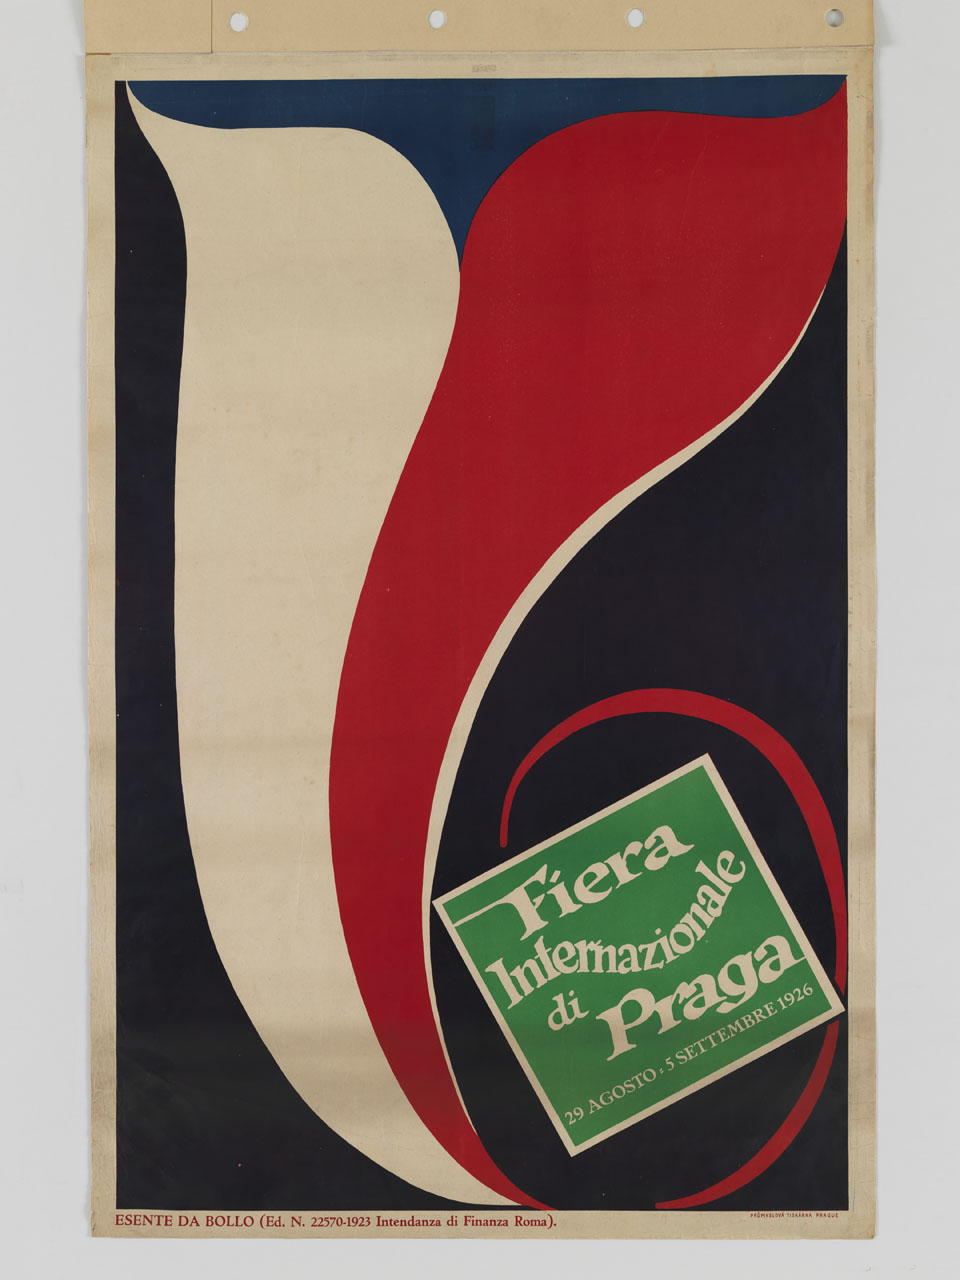 stendardo con i colori della bandiera cecoslovacca si arriccia intorno alla pubblicità di una fiera (manifesto) - ambito cecoslovacco (sec. XX)